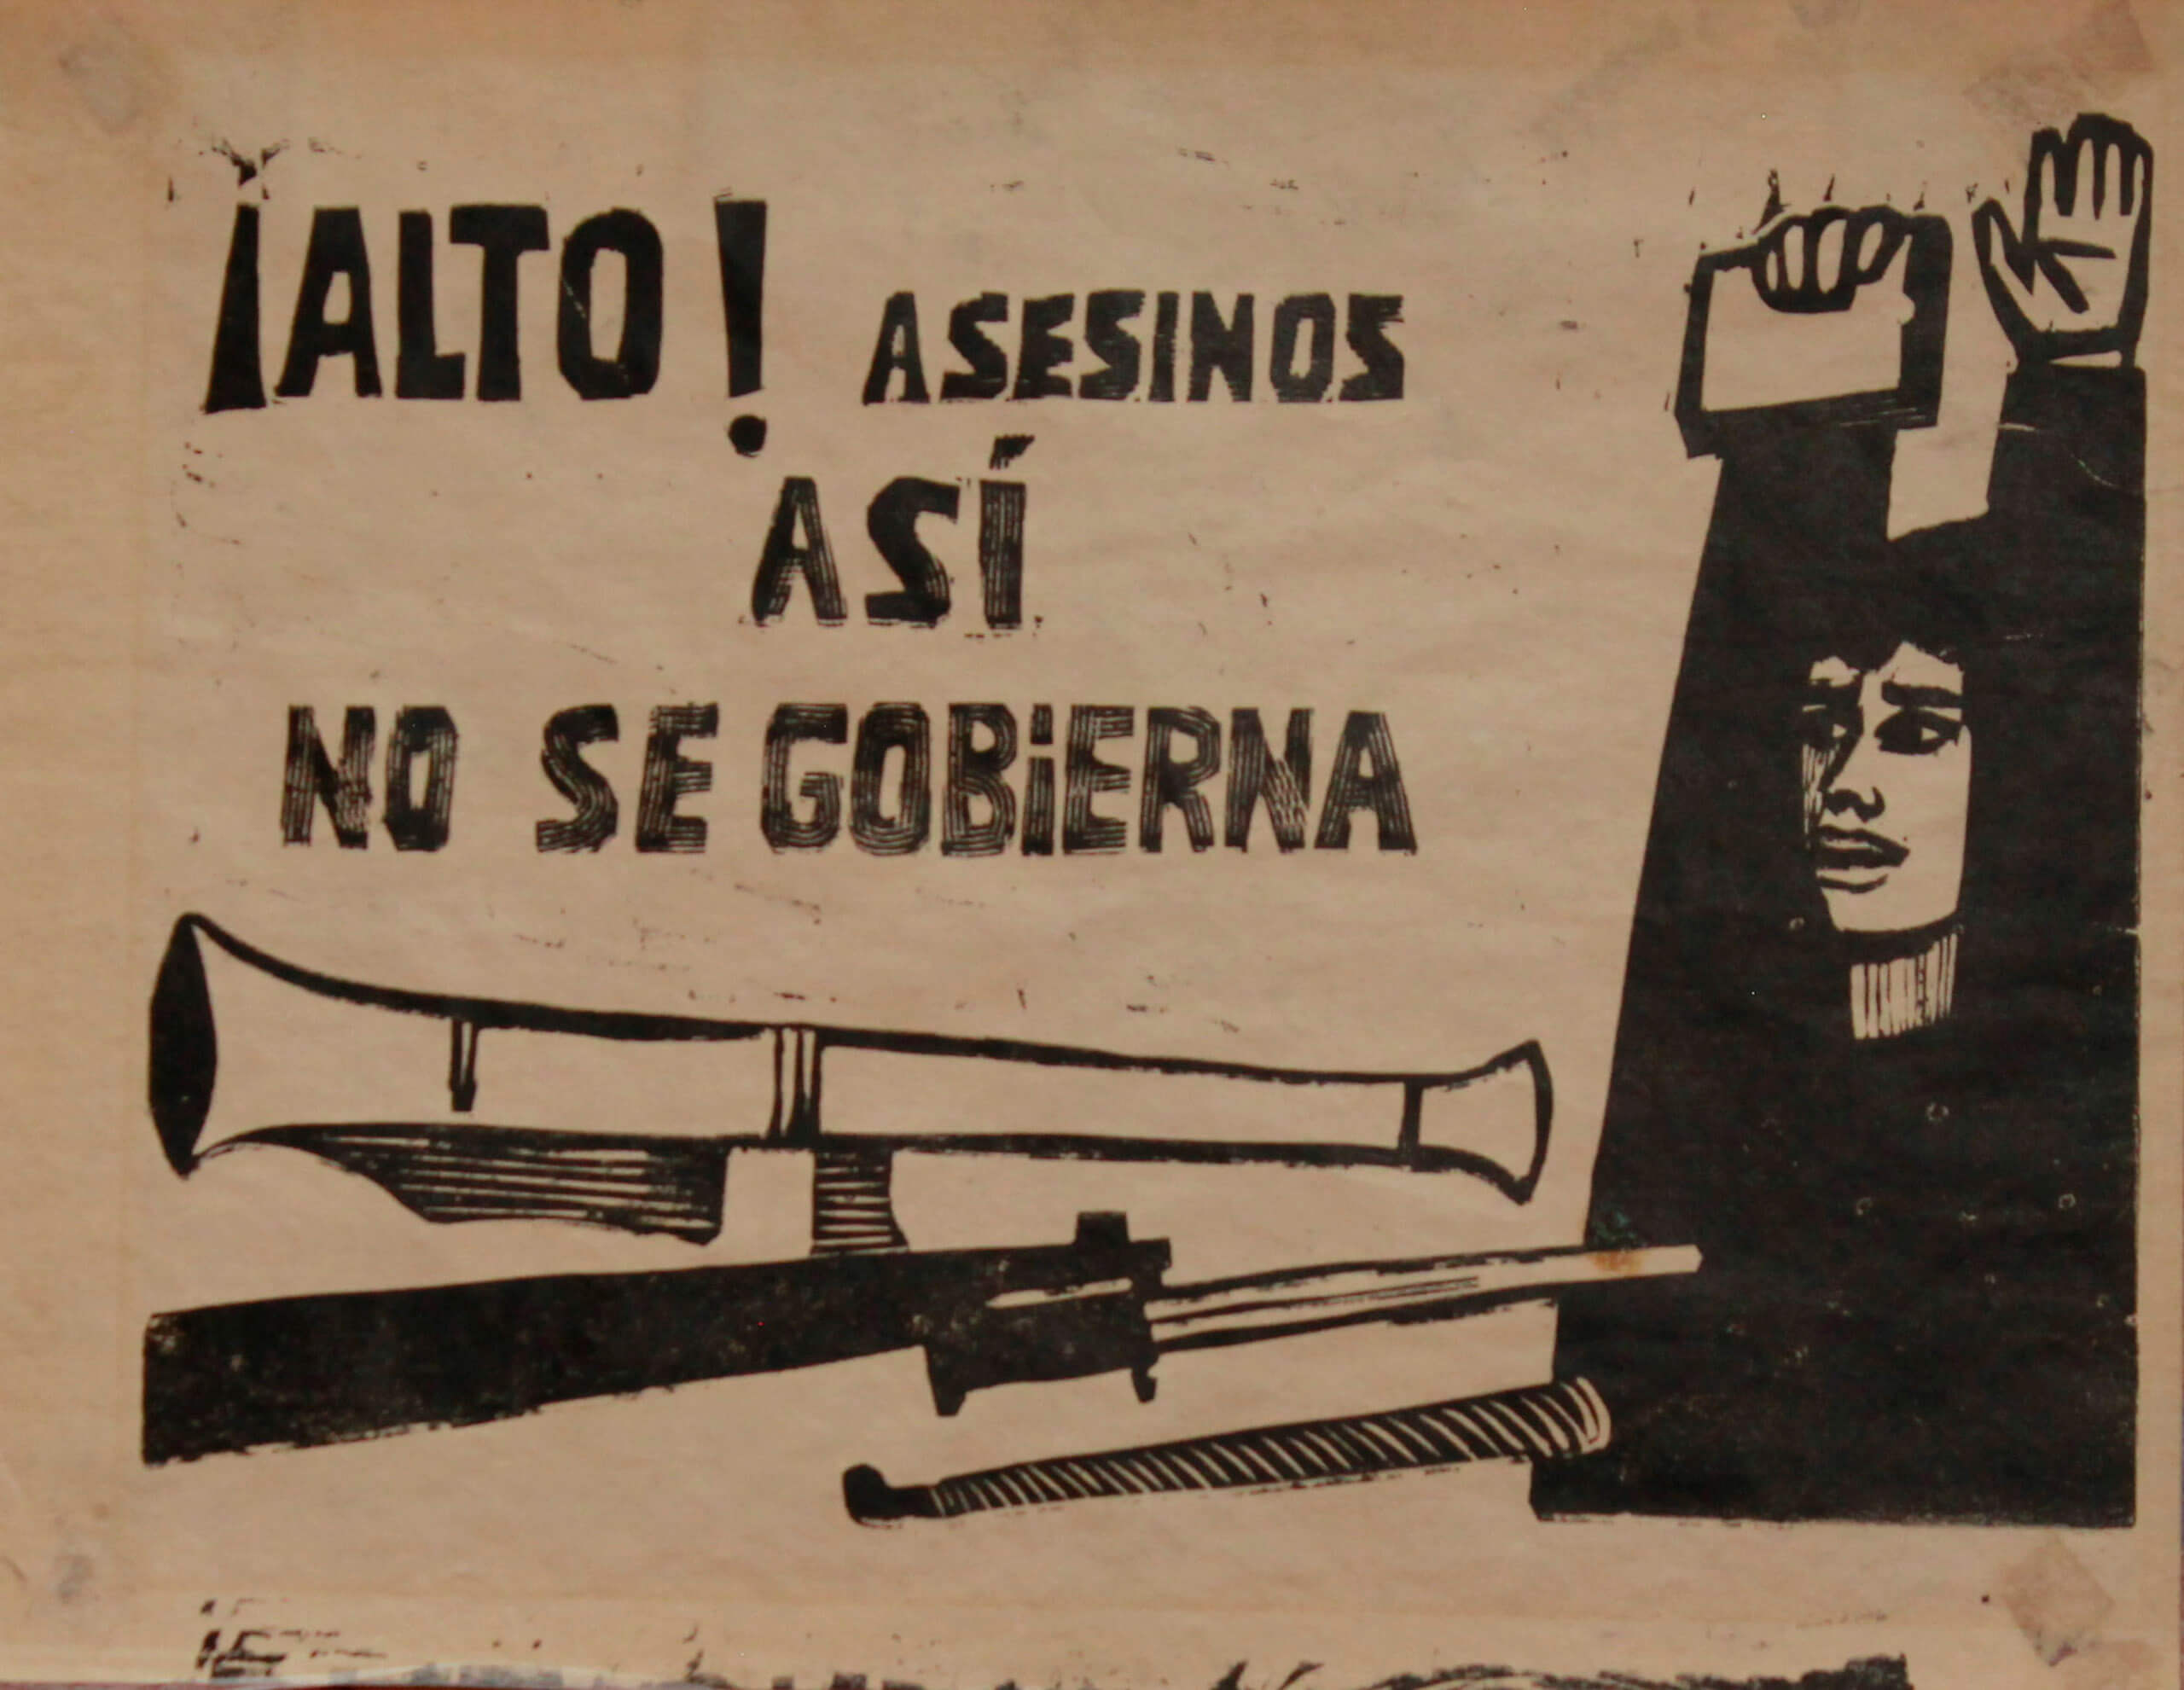 ¡Alto! Asesinos así no se gobierna | La demanda inasumible. Imaginación social y autogestión gráfica en México, 1968-2018 | Museo Amparo, Puebla